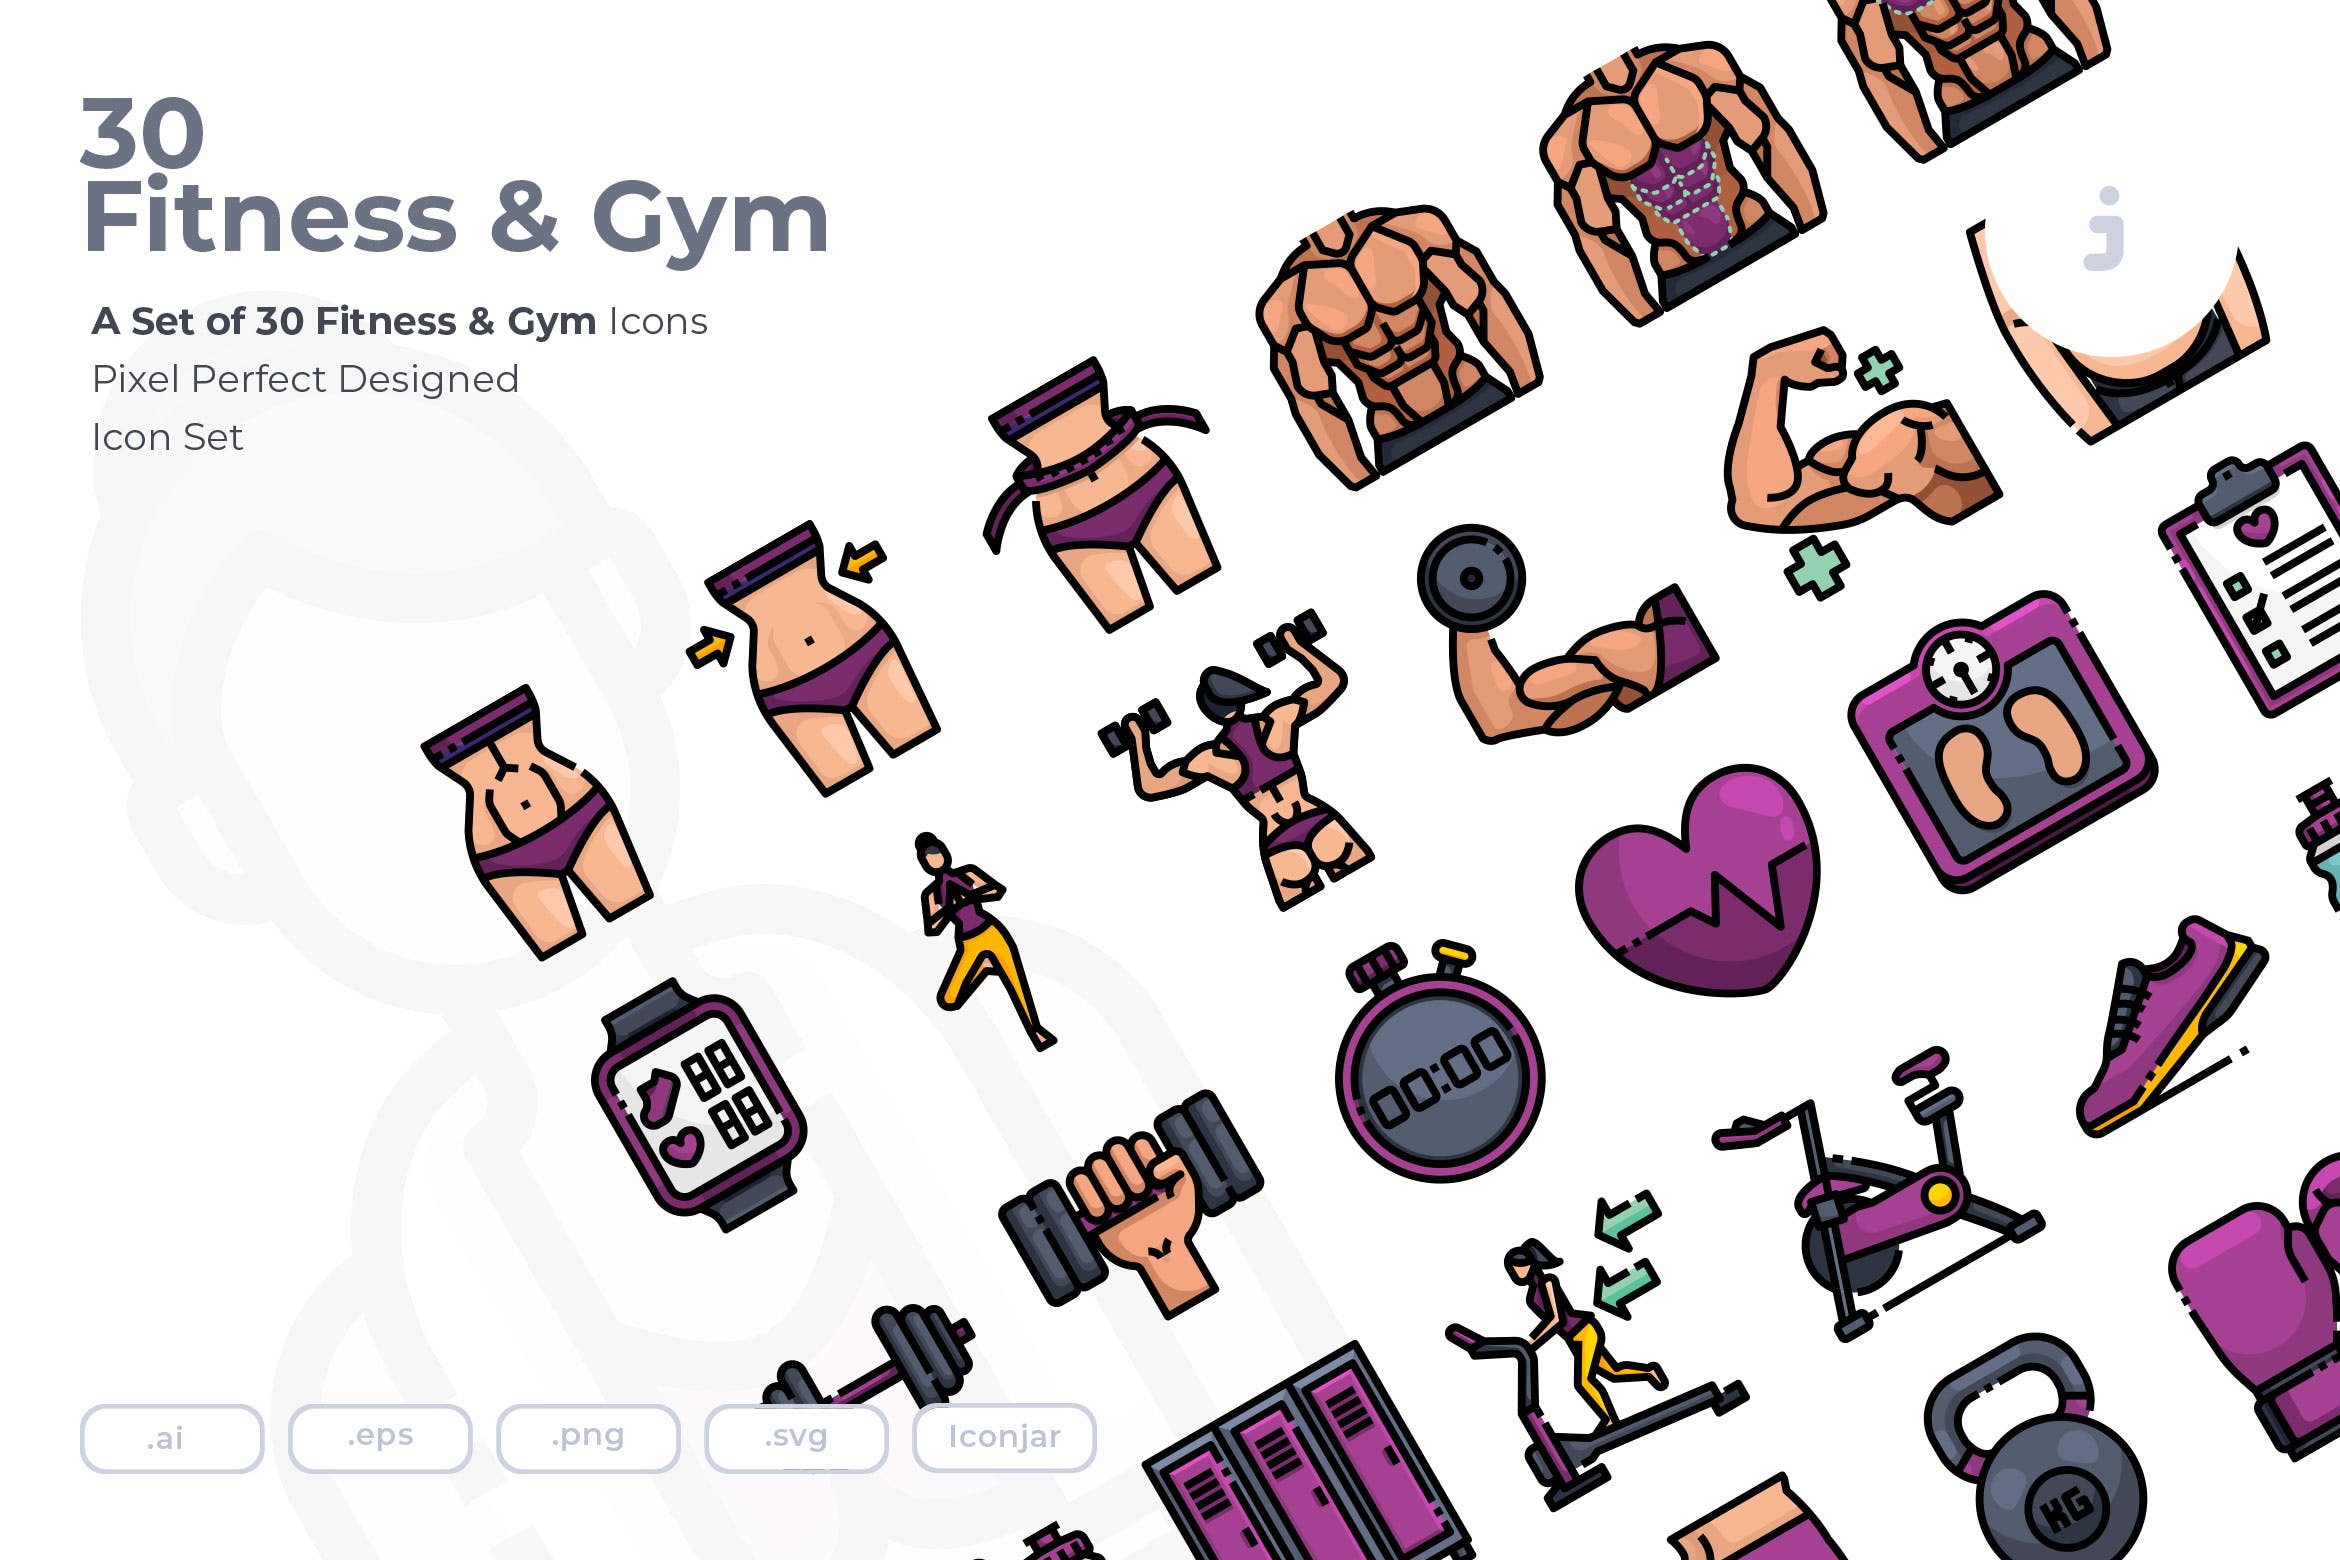 30枚健身运动主题矢量素材库精选图标 30 Fitness & Gym Icons插图